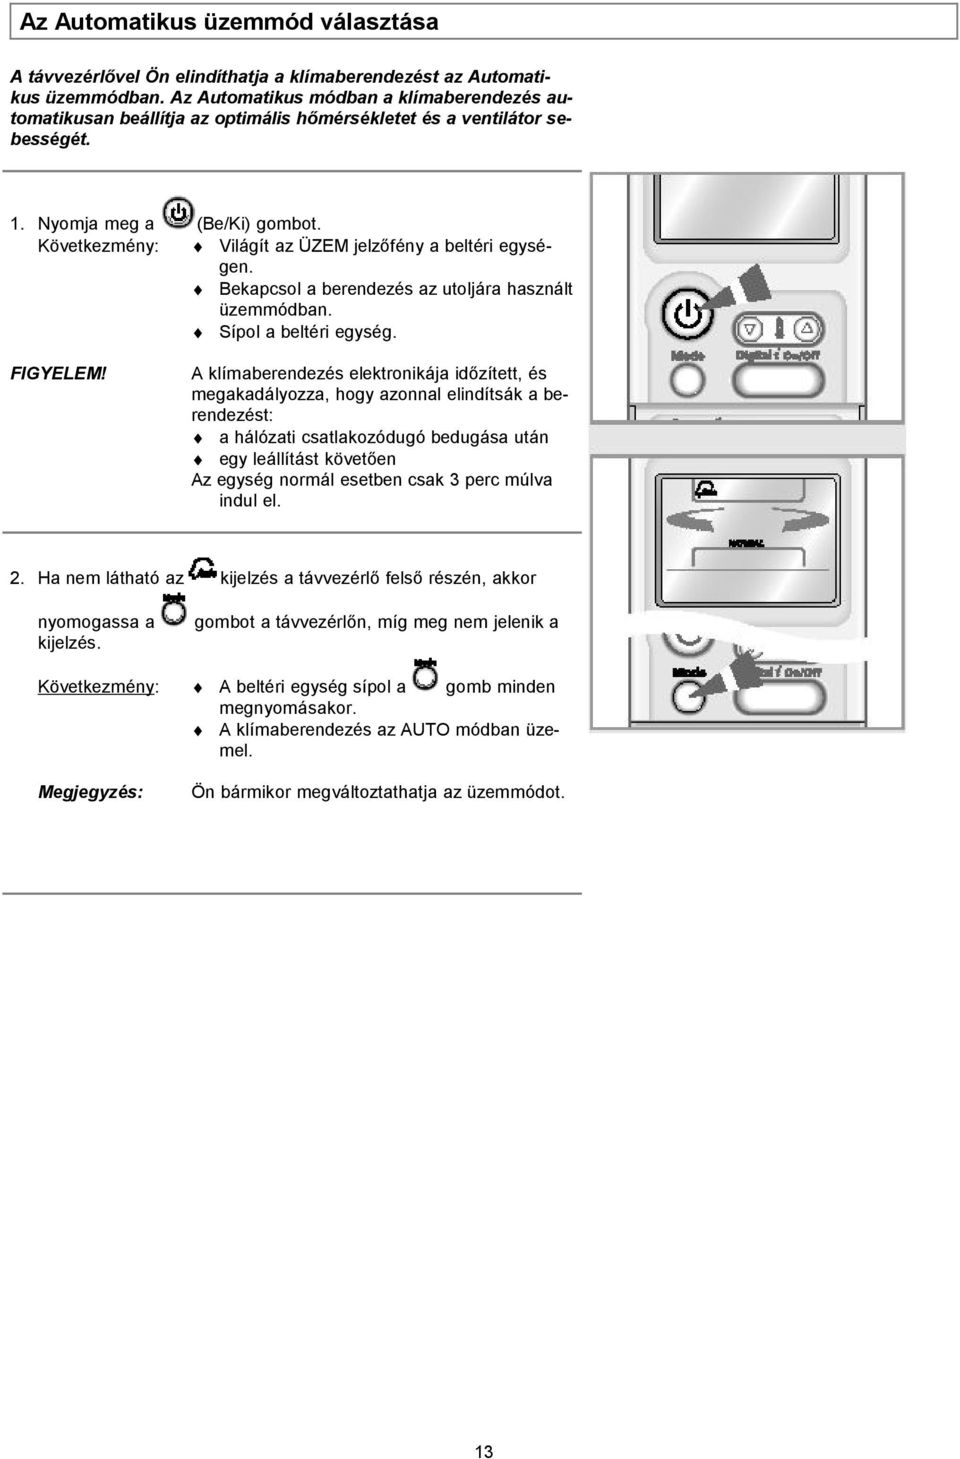 HASZNÁLATI ÚTMUTATÓ. FREE JOINT TÍPUSÚ SZOBAKLÍMA (Hűtés és fűtés) - PDF  Ingyenes letöltés